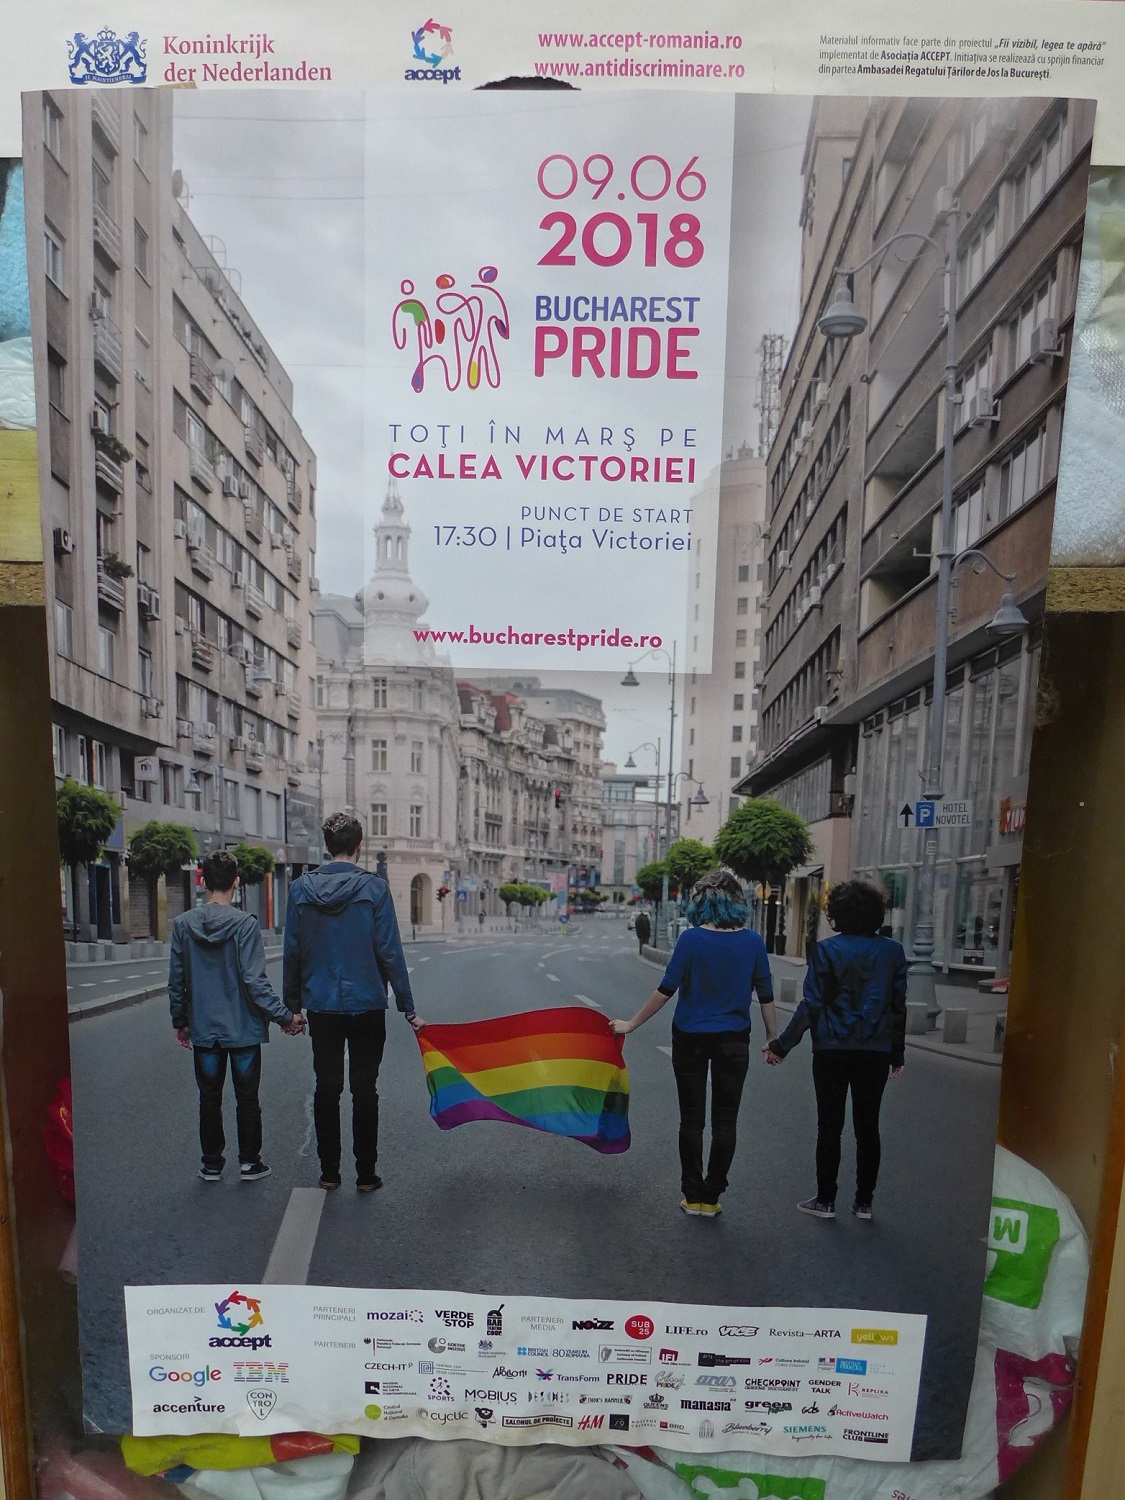 L’affiche de la gay pride de Bucarest de 2018. Pour la première fois, la marche des fiertés roumaine a eu lieu en plein centre de la capitale.